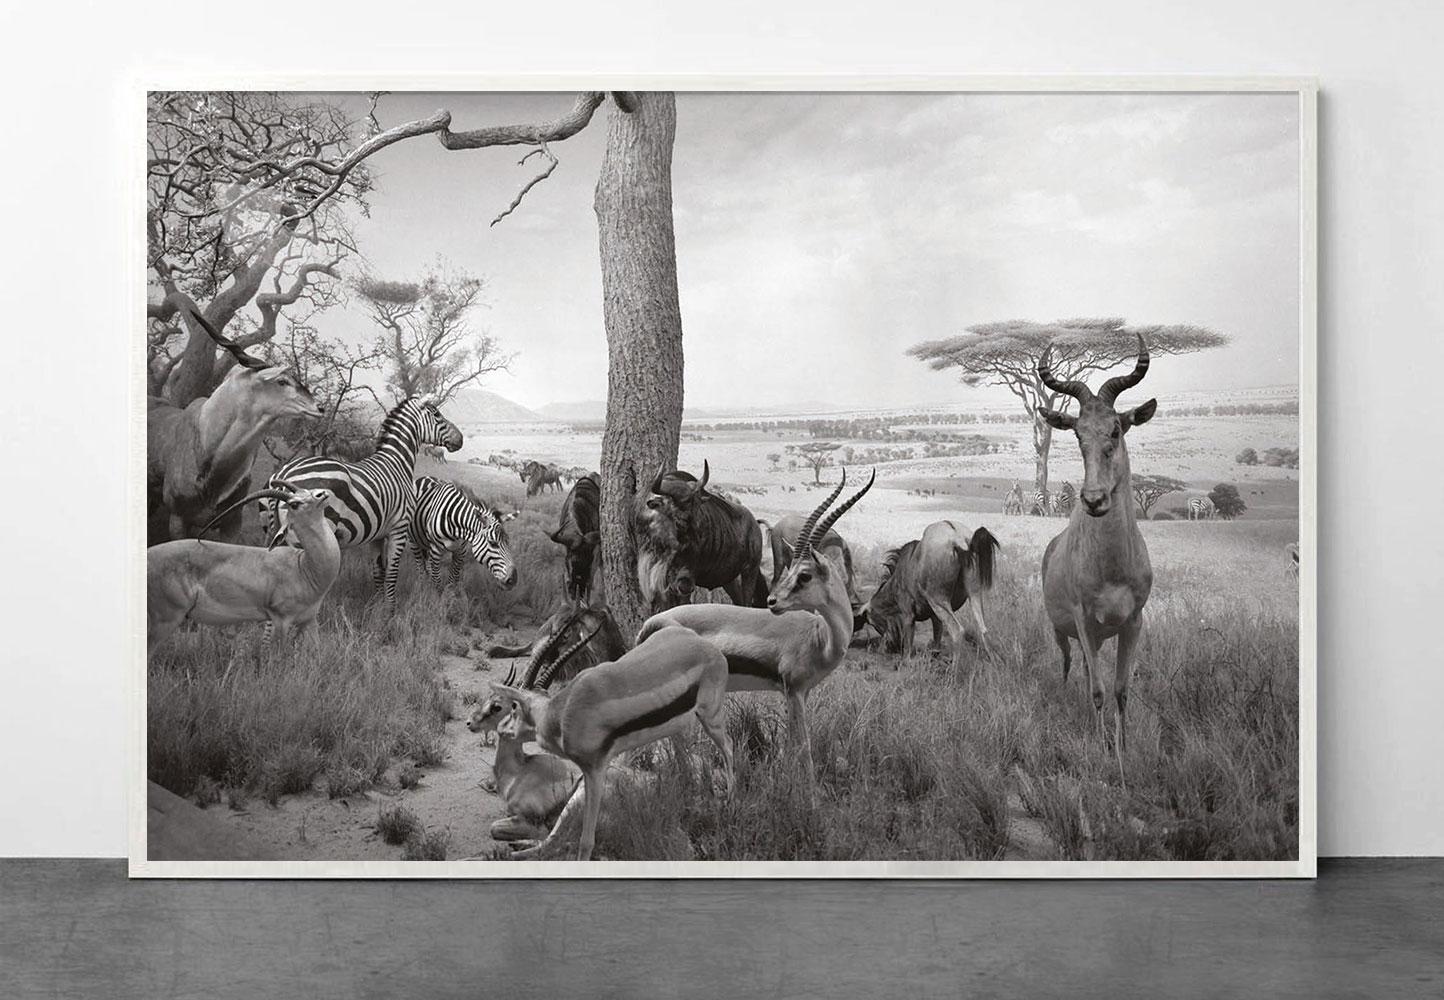 Safari - Photograph by Greg Lotus